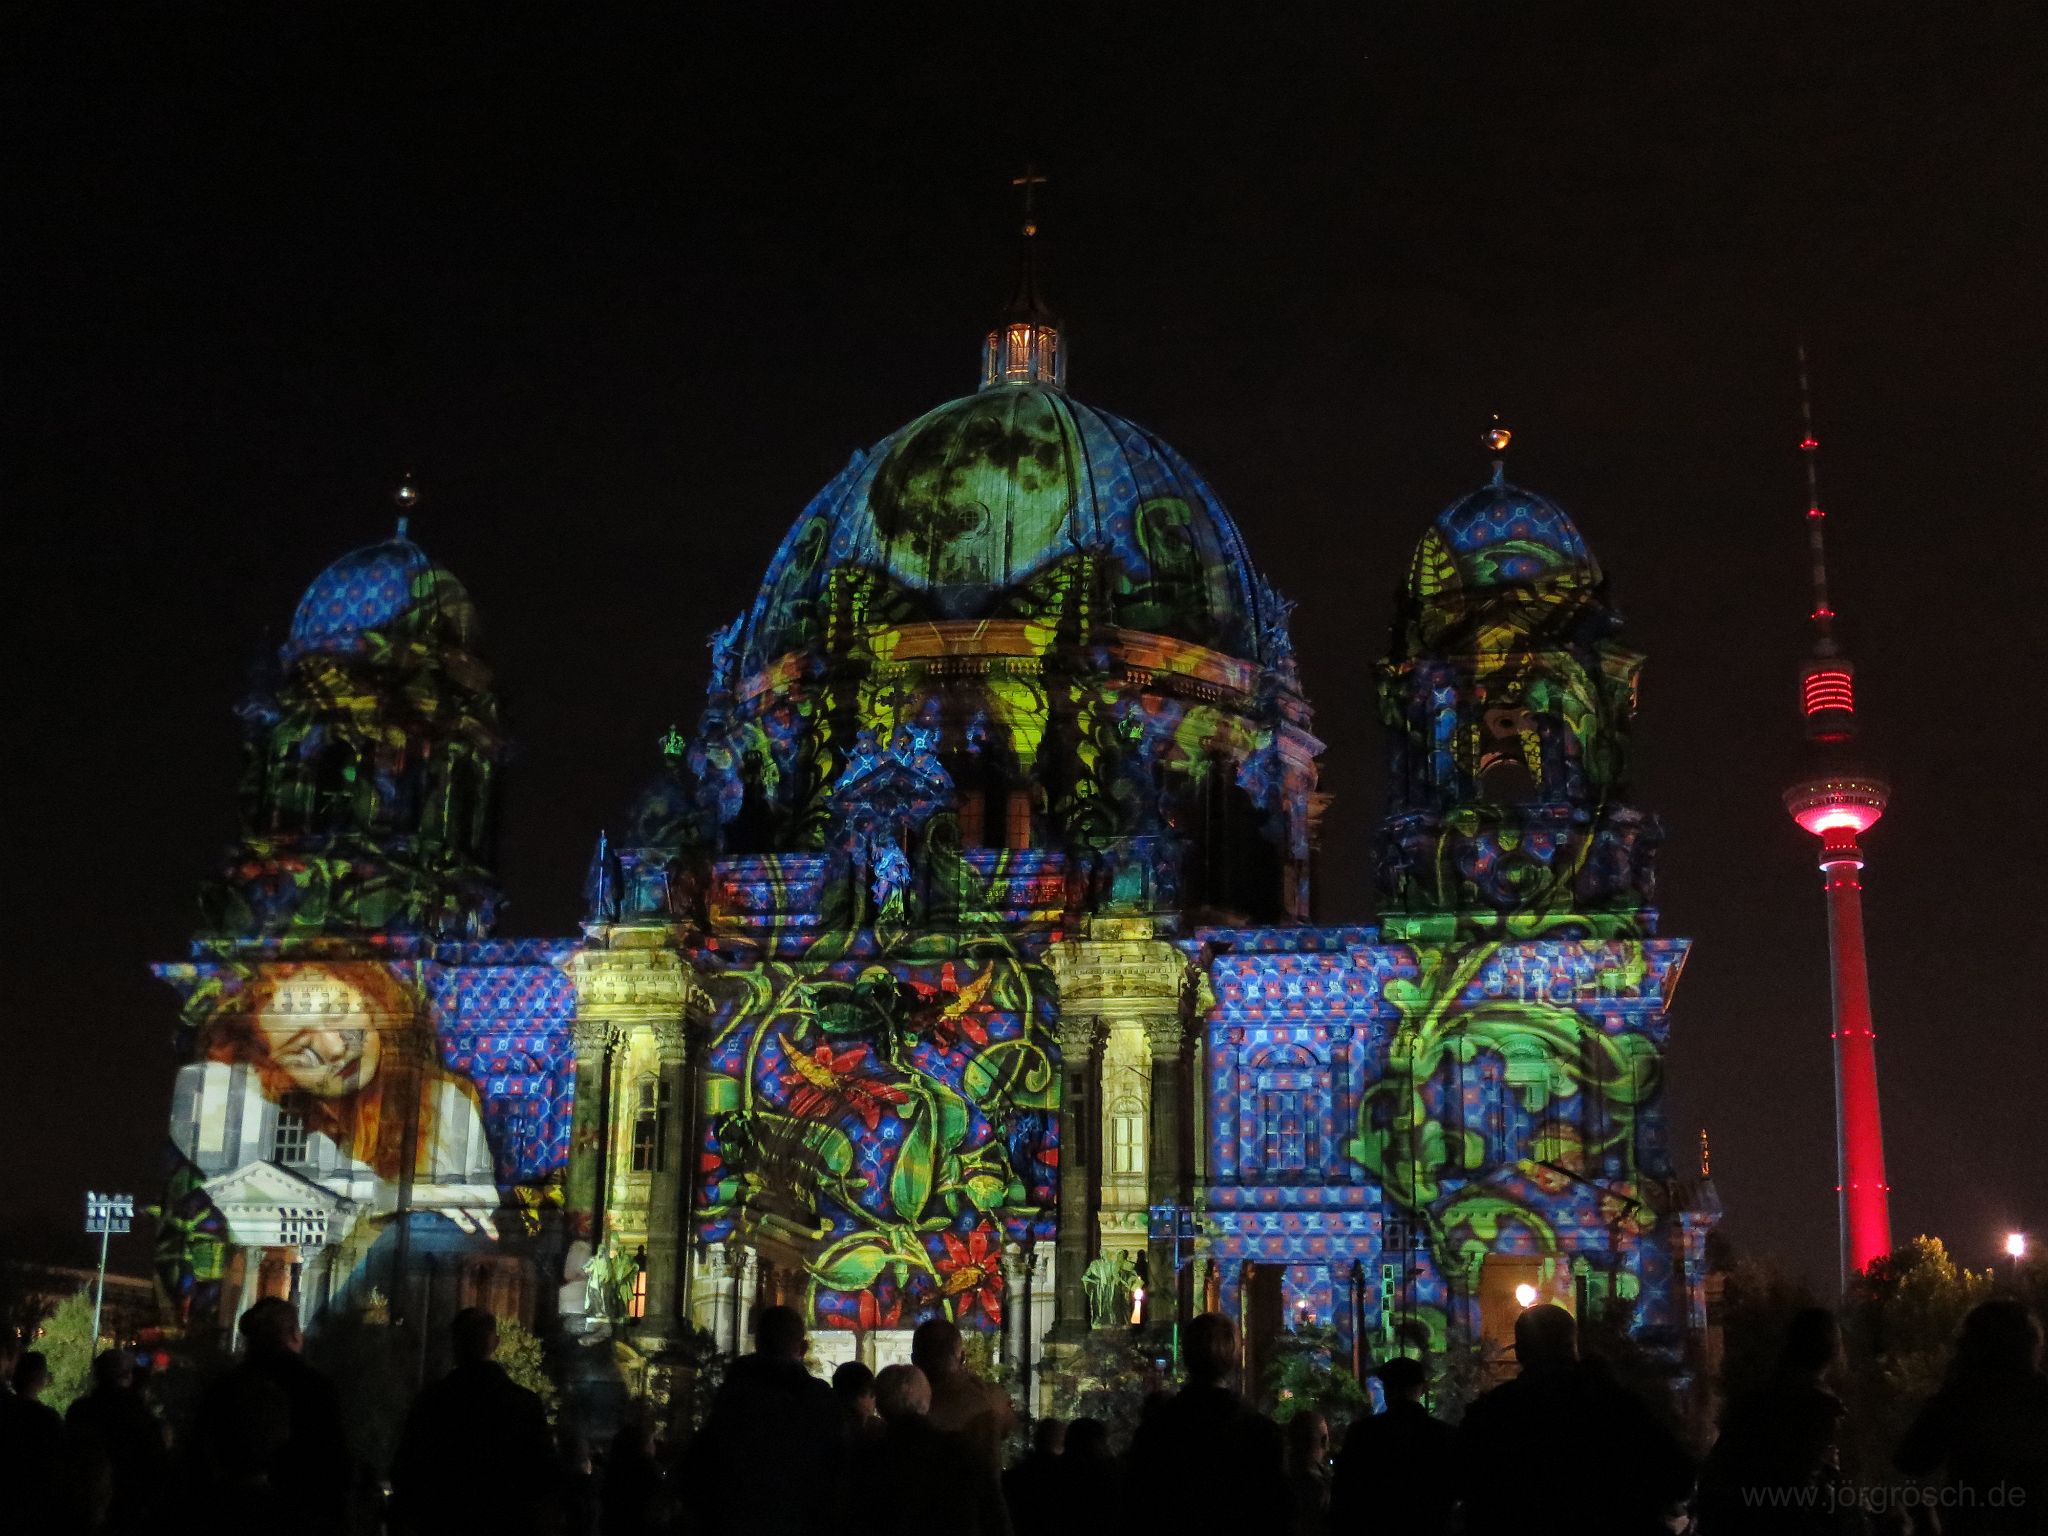 20141017-festivaloflights.JPG - Festival of Lights - Berliner Dom